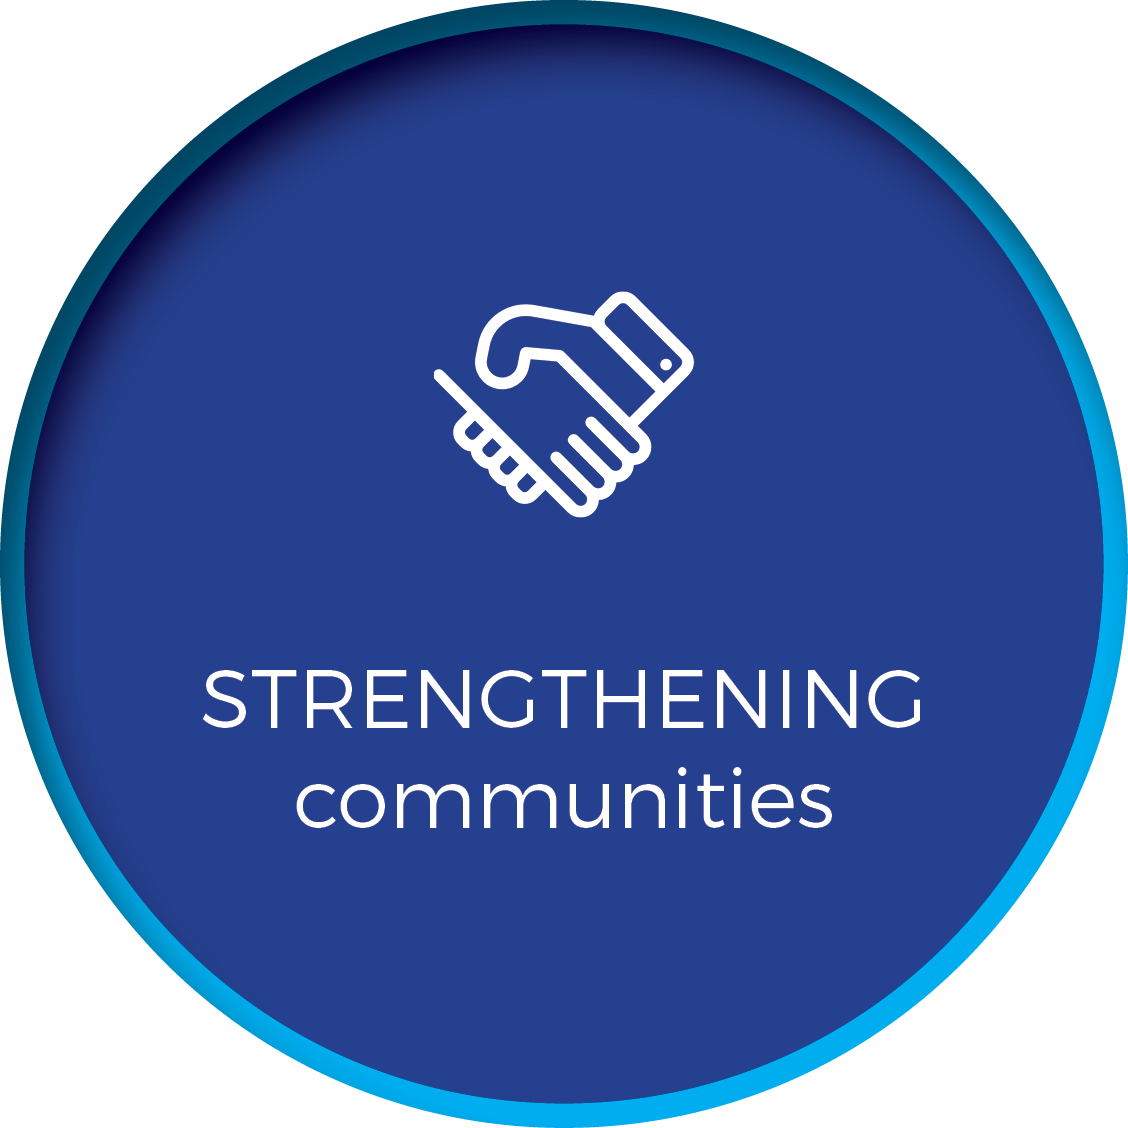 Strengthening communities